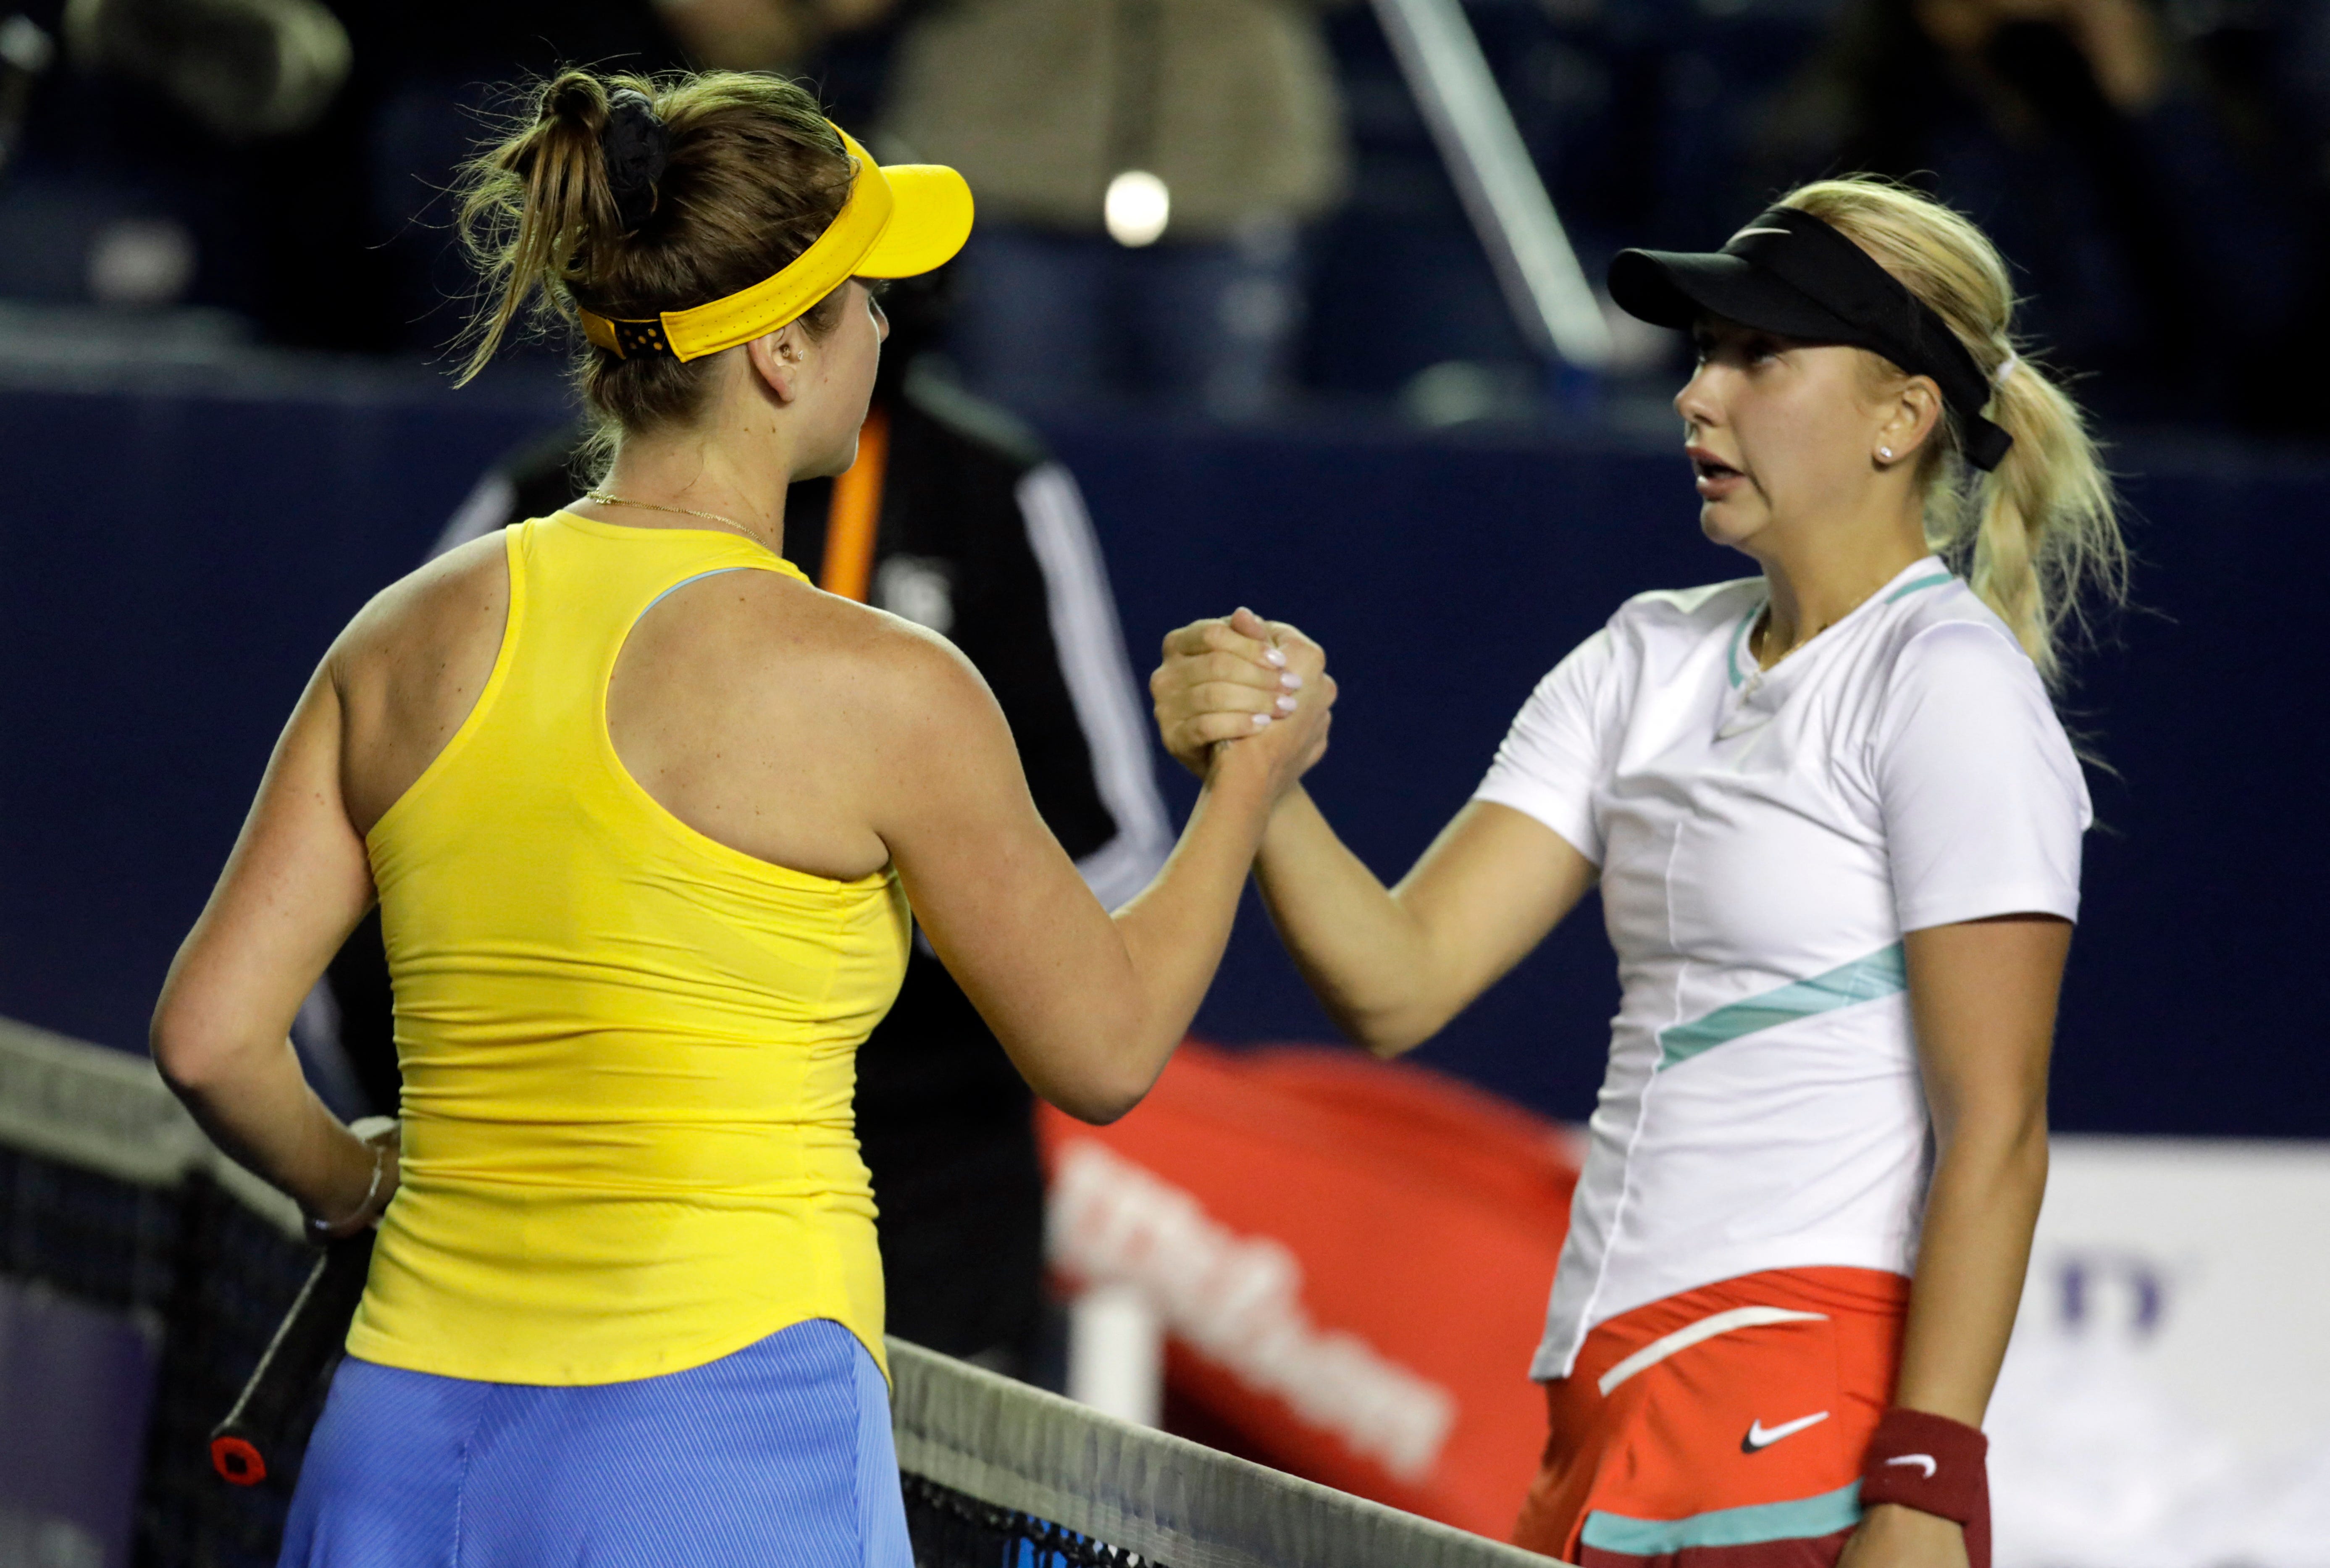 Anasatsia Potapova schüttelt nach ihrem Erstrundenspiel der Ukrainerin Elina Svitolina die Hand